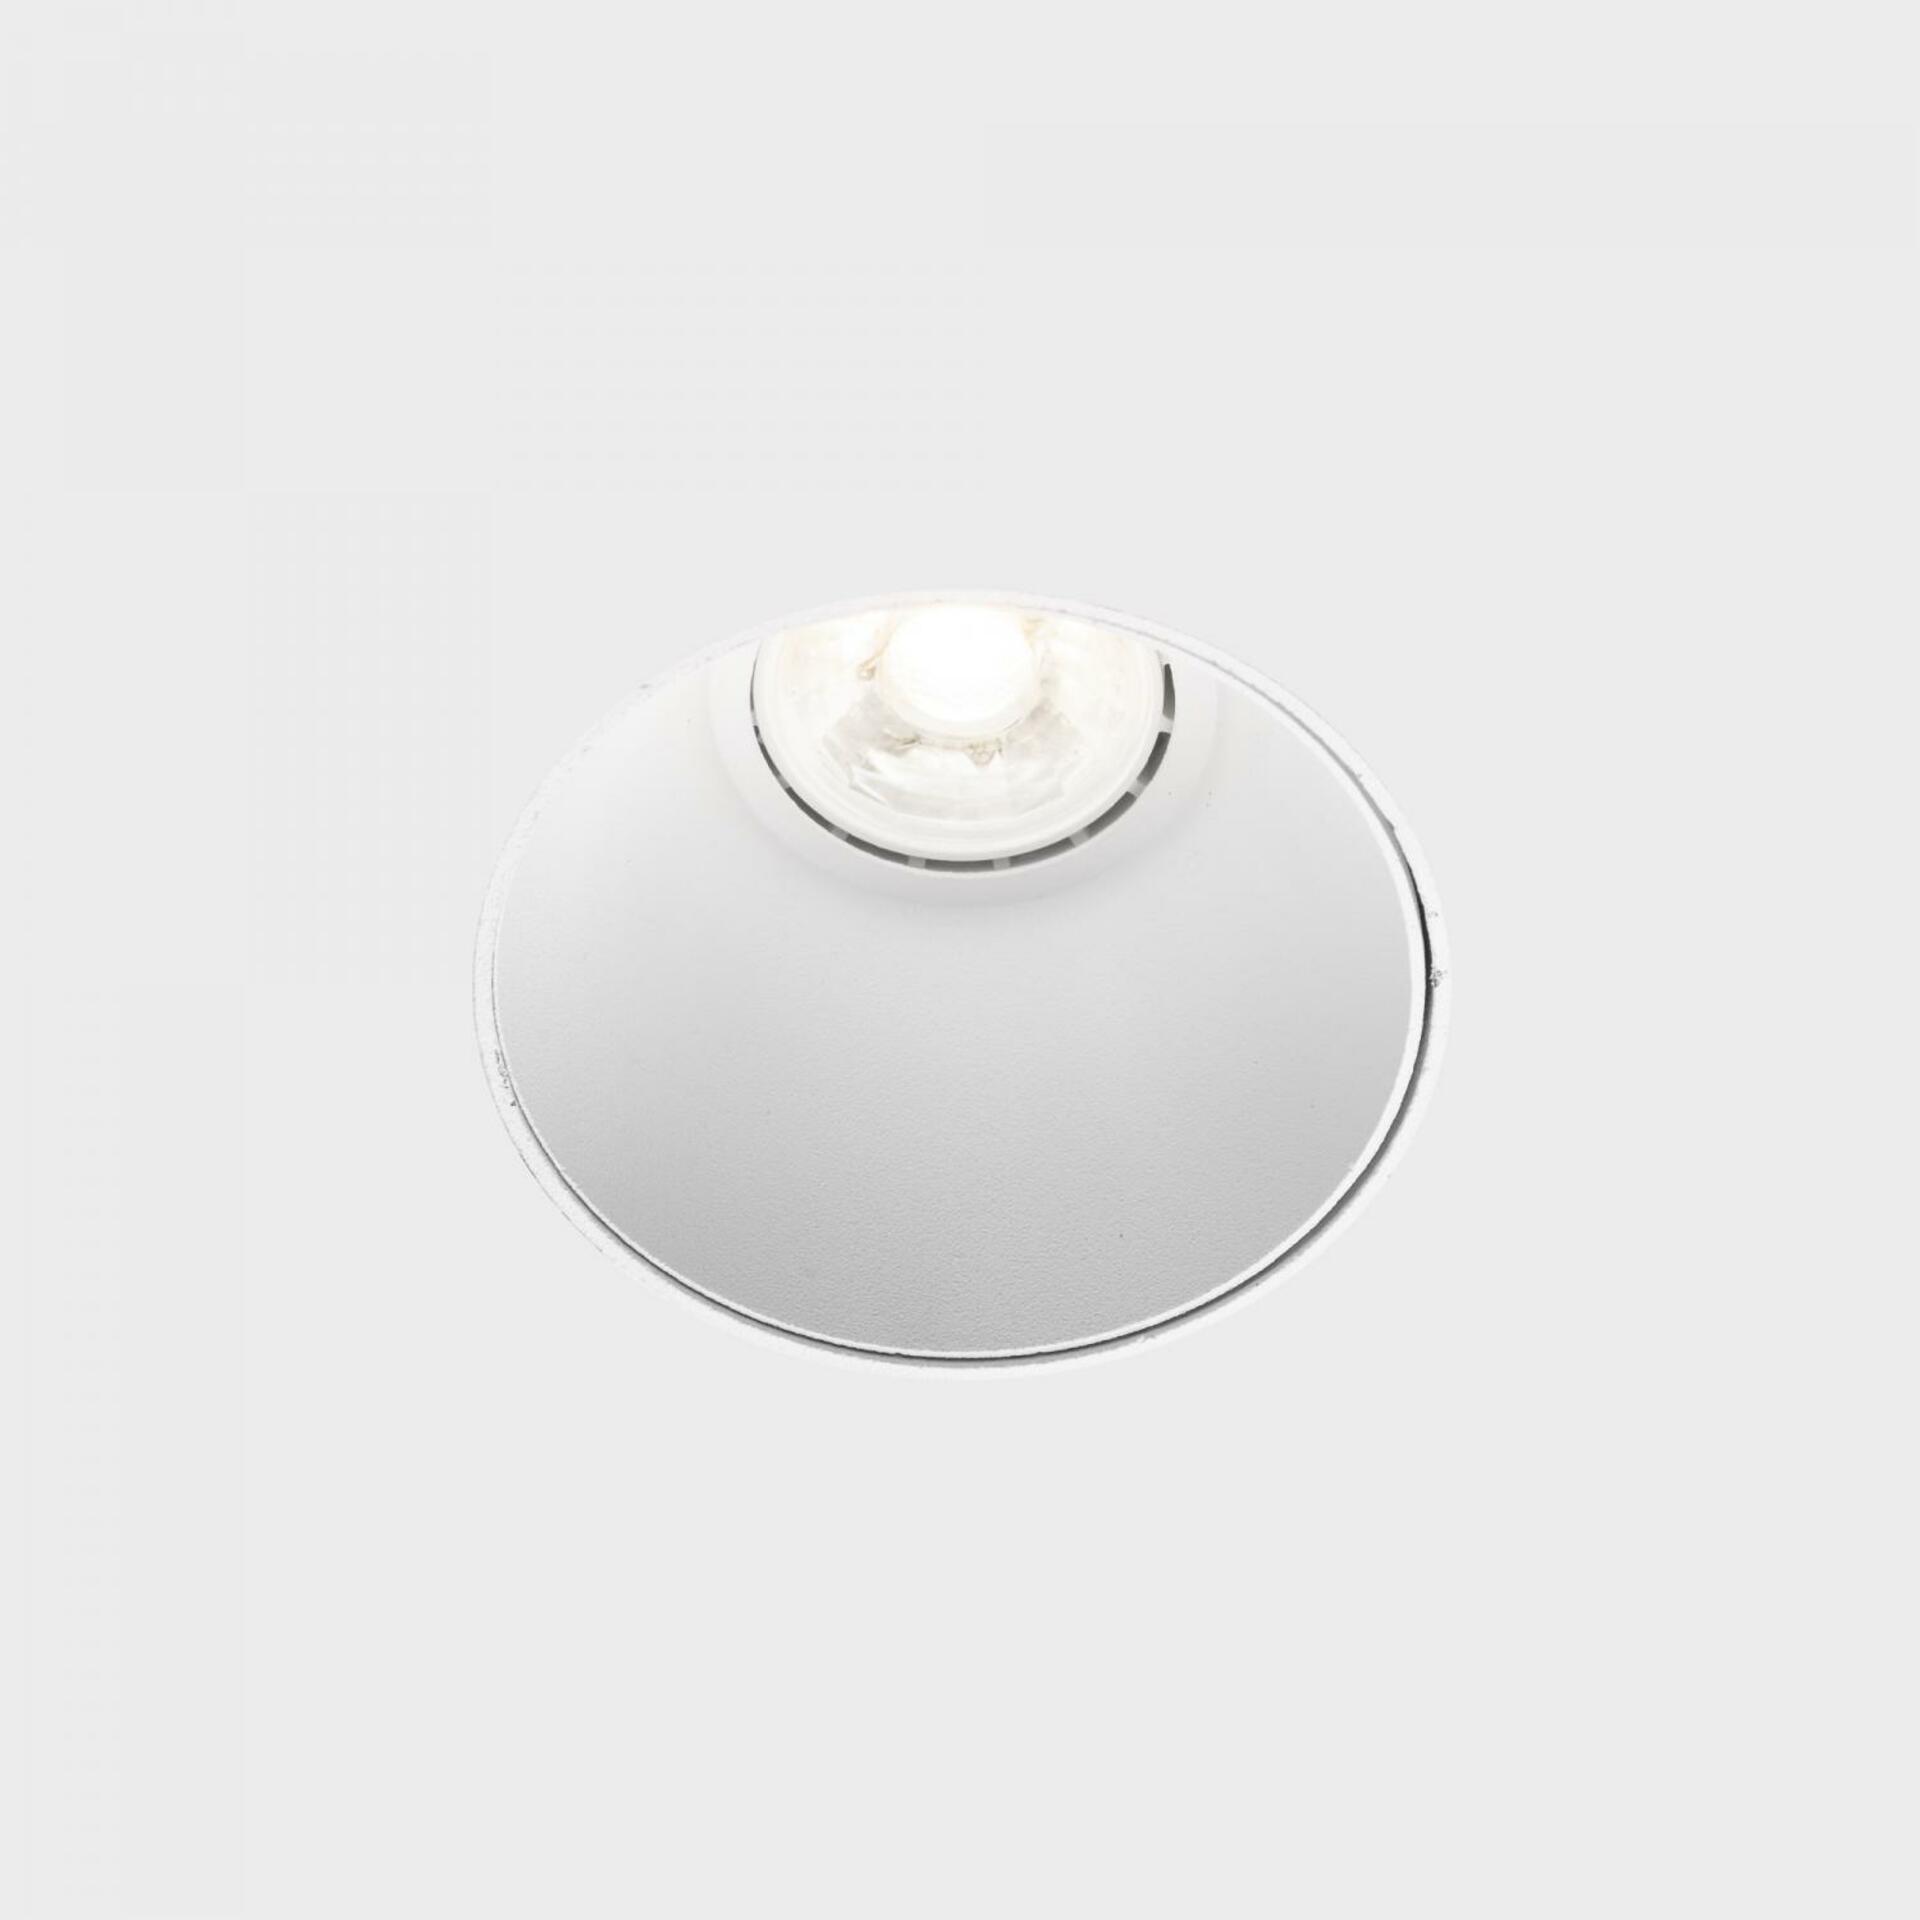 KOHL LIGHTING KOHL-Lighting OZONE SAT bezrámečkové zapuštěné svítidlo pr. 85 mm bílá 8 W LED